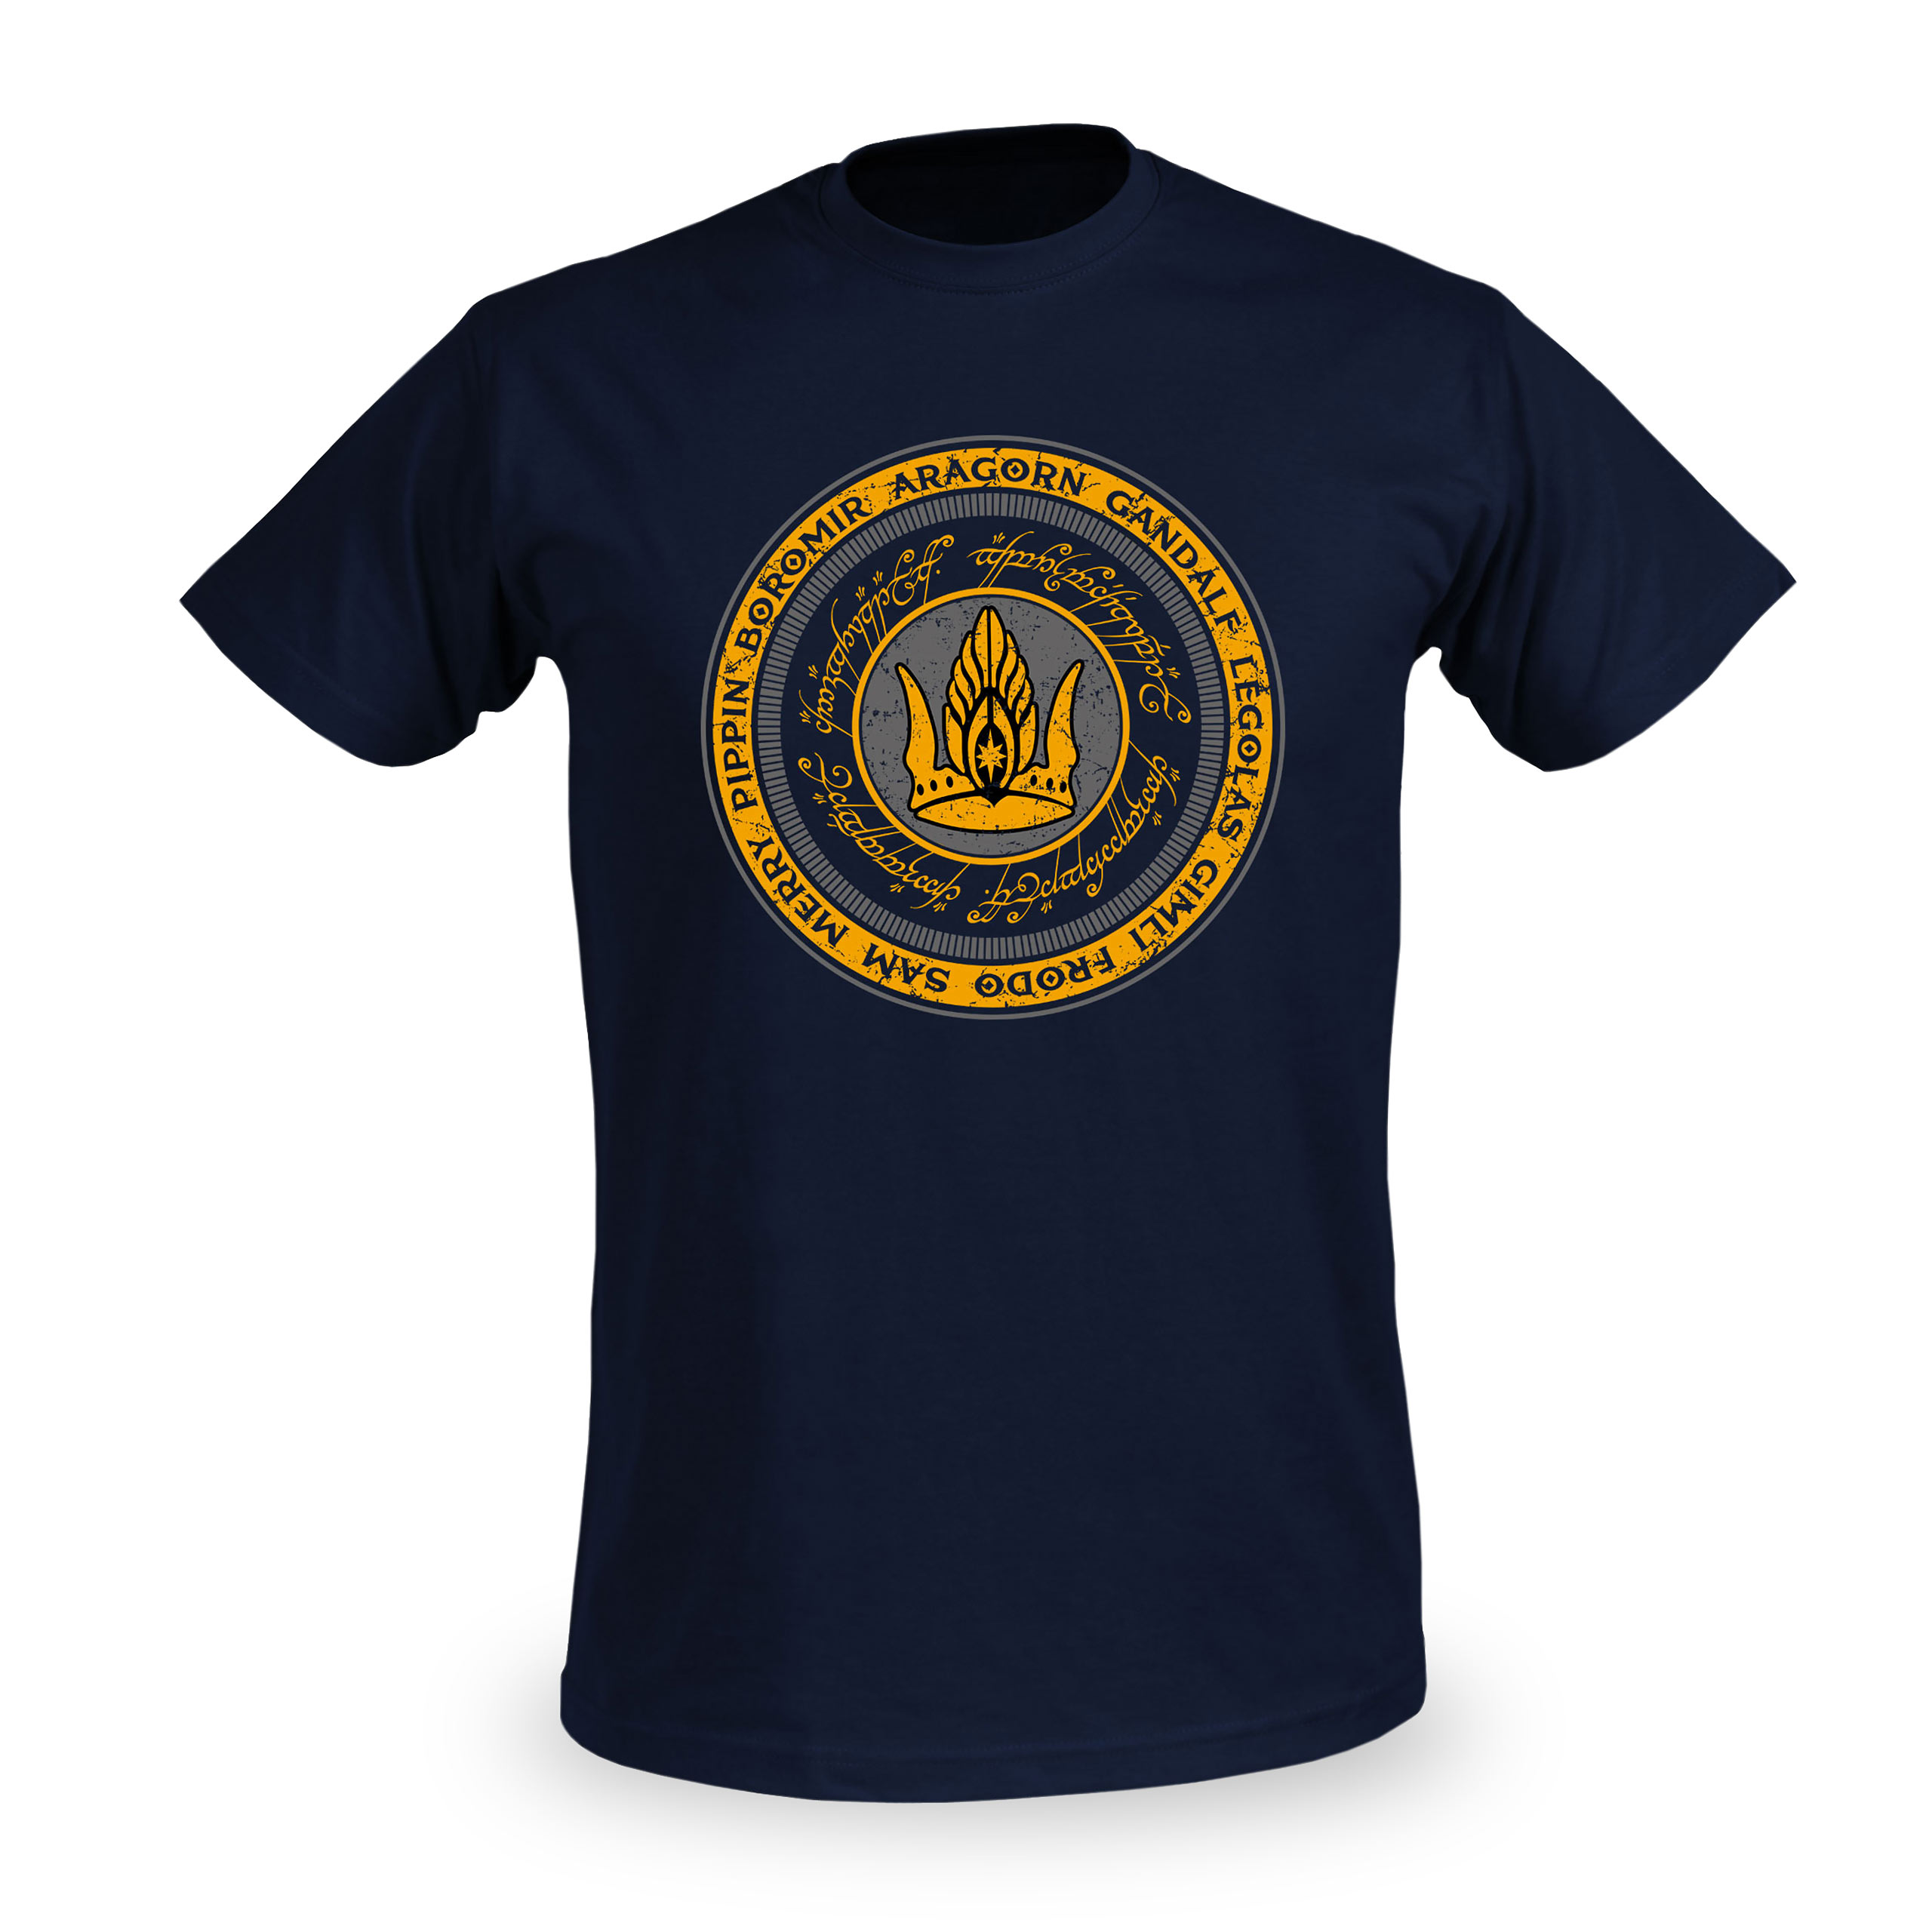 Herr der Ringe - Gemeinsam für Gondor T-Shirt blau